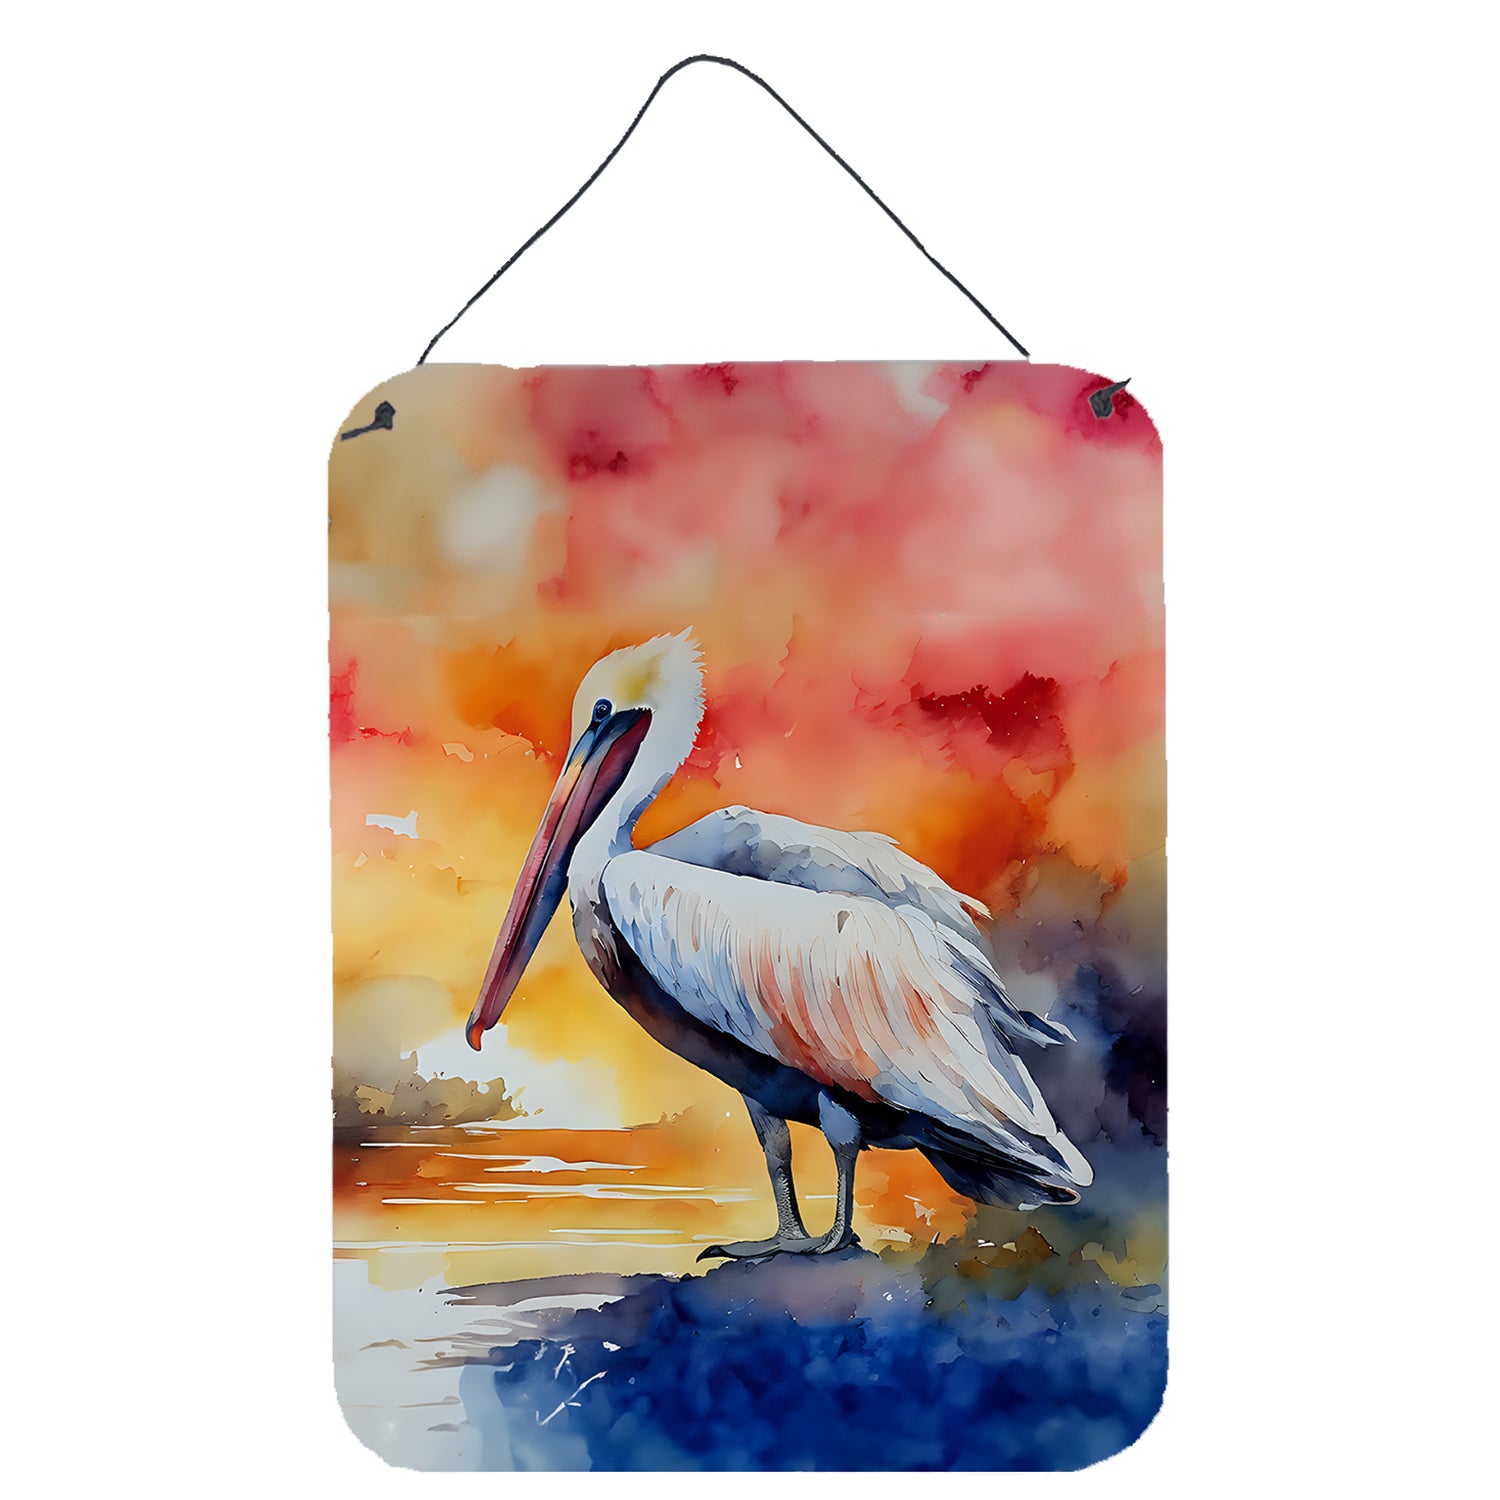 Buy this Pelican Wall or Door Hanging Prints